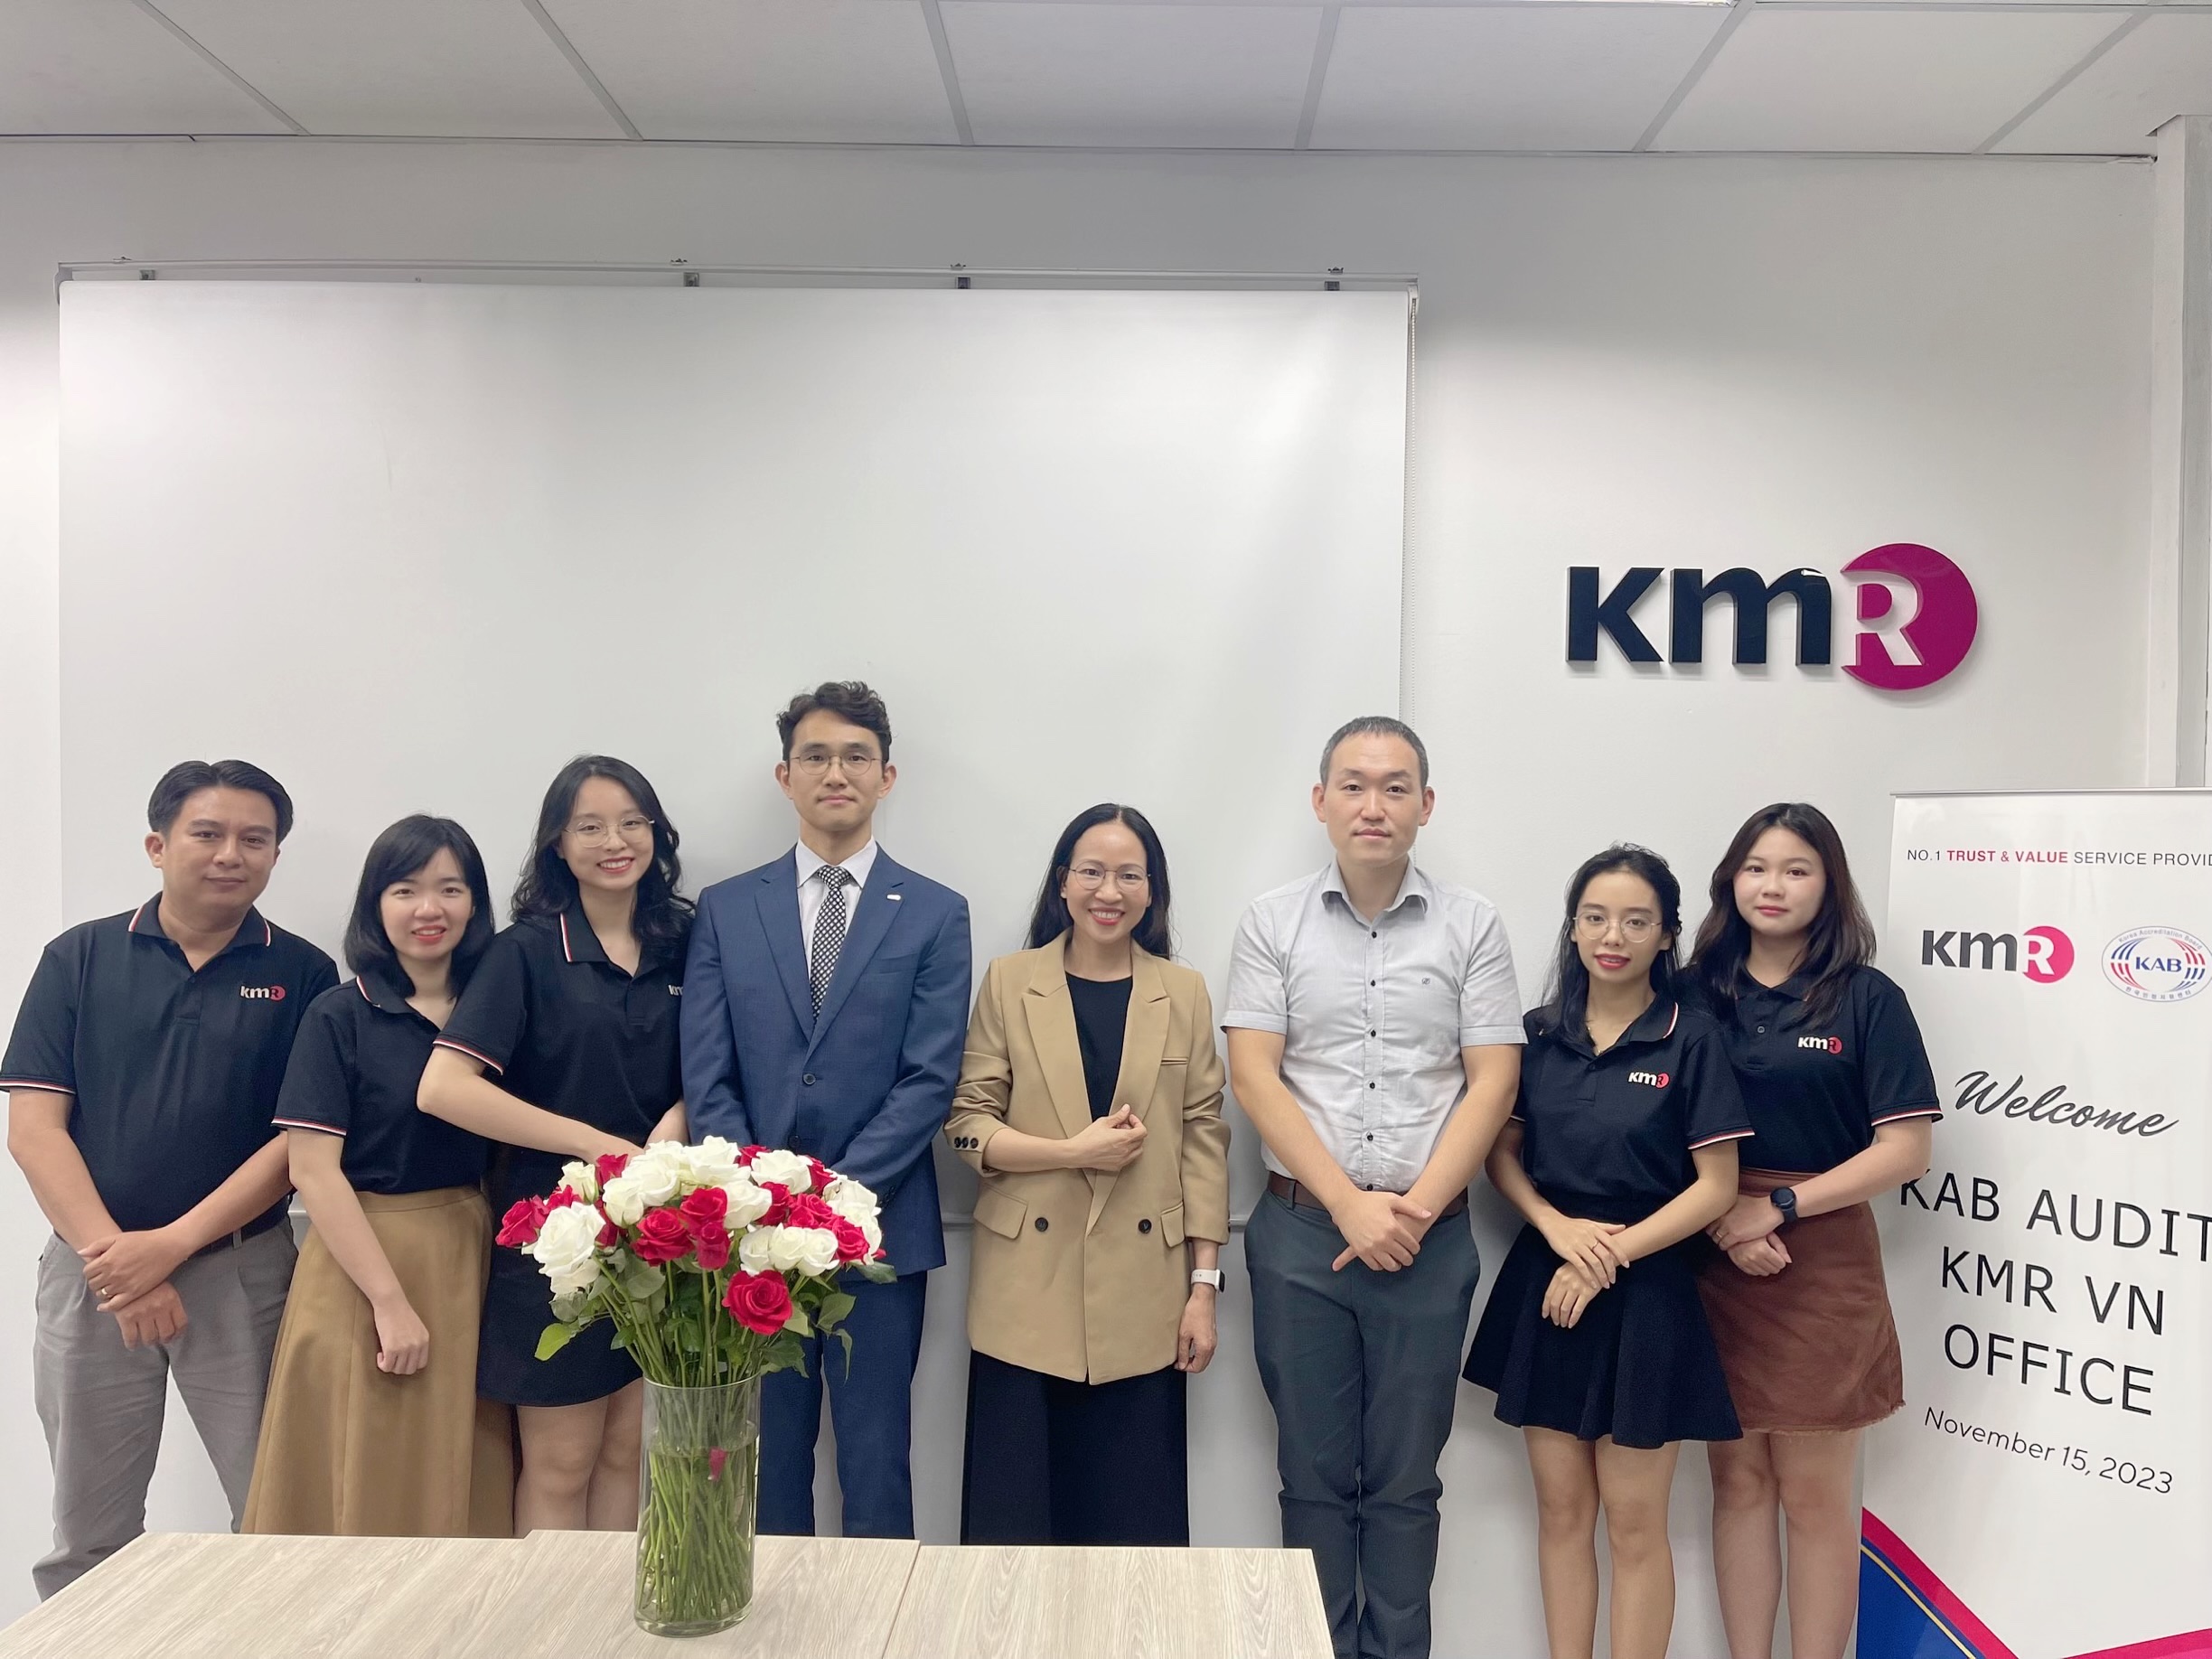 Cơ quan công nhận Hàn Quốc KAB đánh giá định kỳ KMR VN tại văn phòng HCM